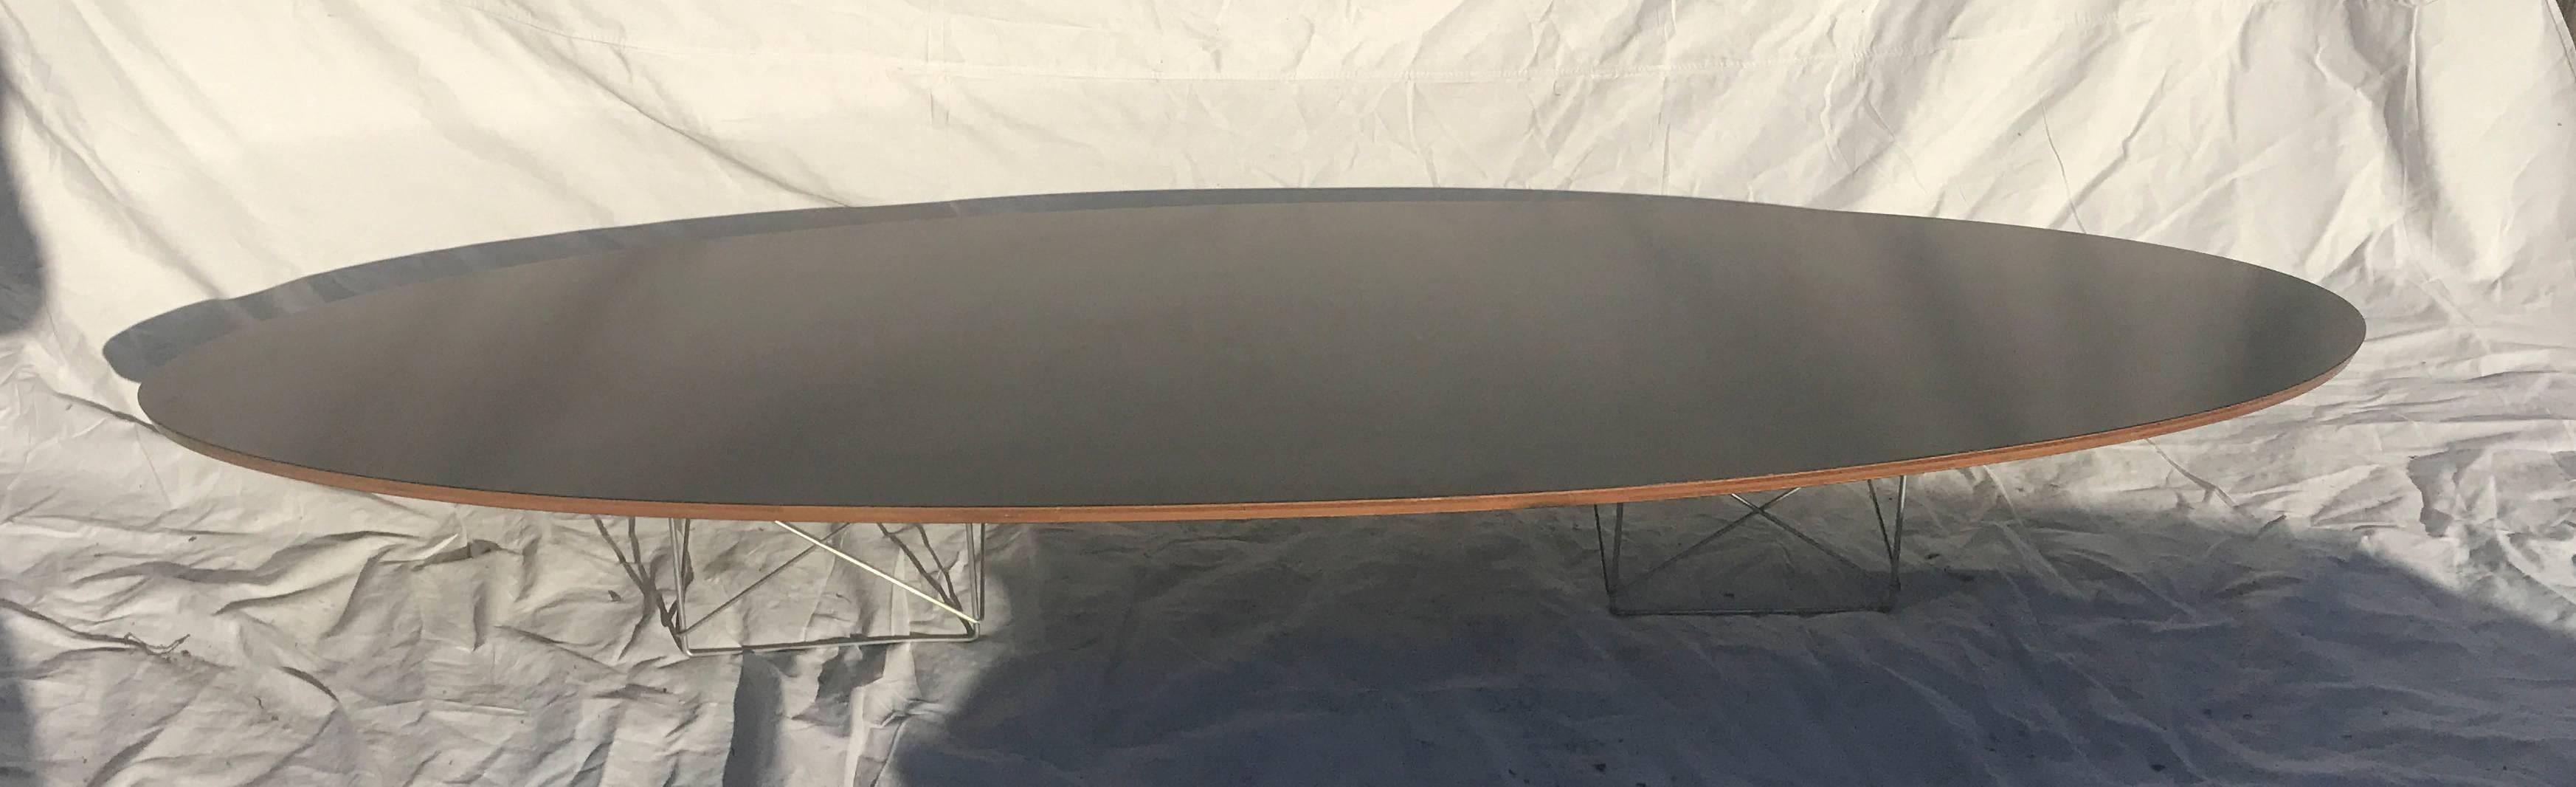 Elliptical Table Rod (ETR) - Original Eames Elliptical Table mit Stangenfuß, der aufgrund seiner länglichen Form und seines niedrigen Profils auch als Surfboard-Tisch bezeichnet wird. Es werden zwei der für die LTR-Tische entwickelten Drahtgestelle